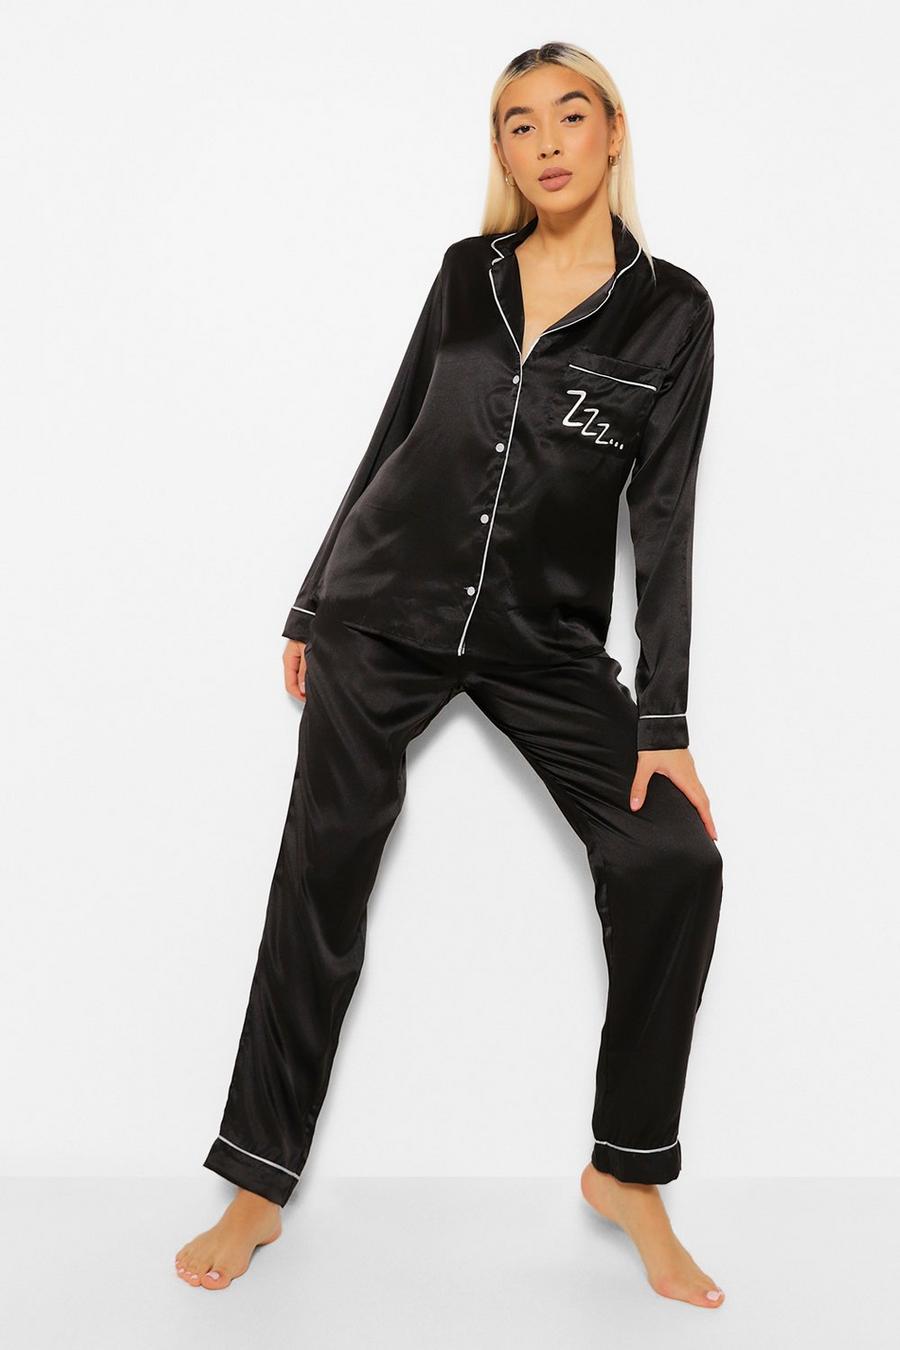 Set pigiama in raso con pantaloni lunghe e top con scritta Zzz e bottoni, Black nero